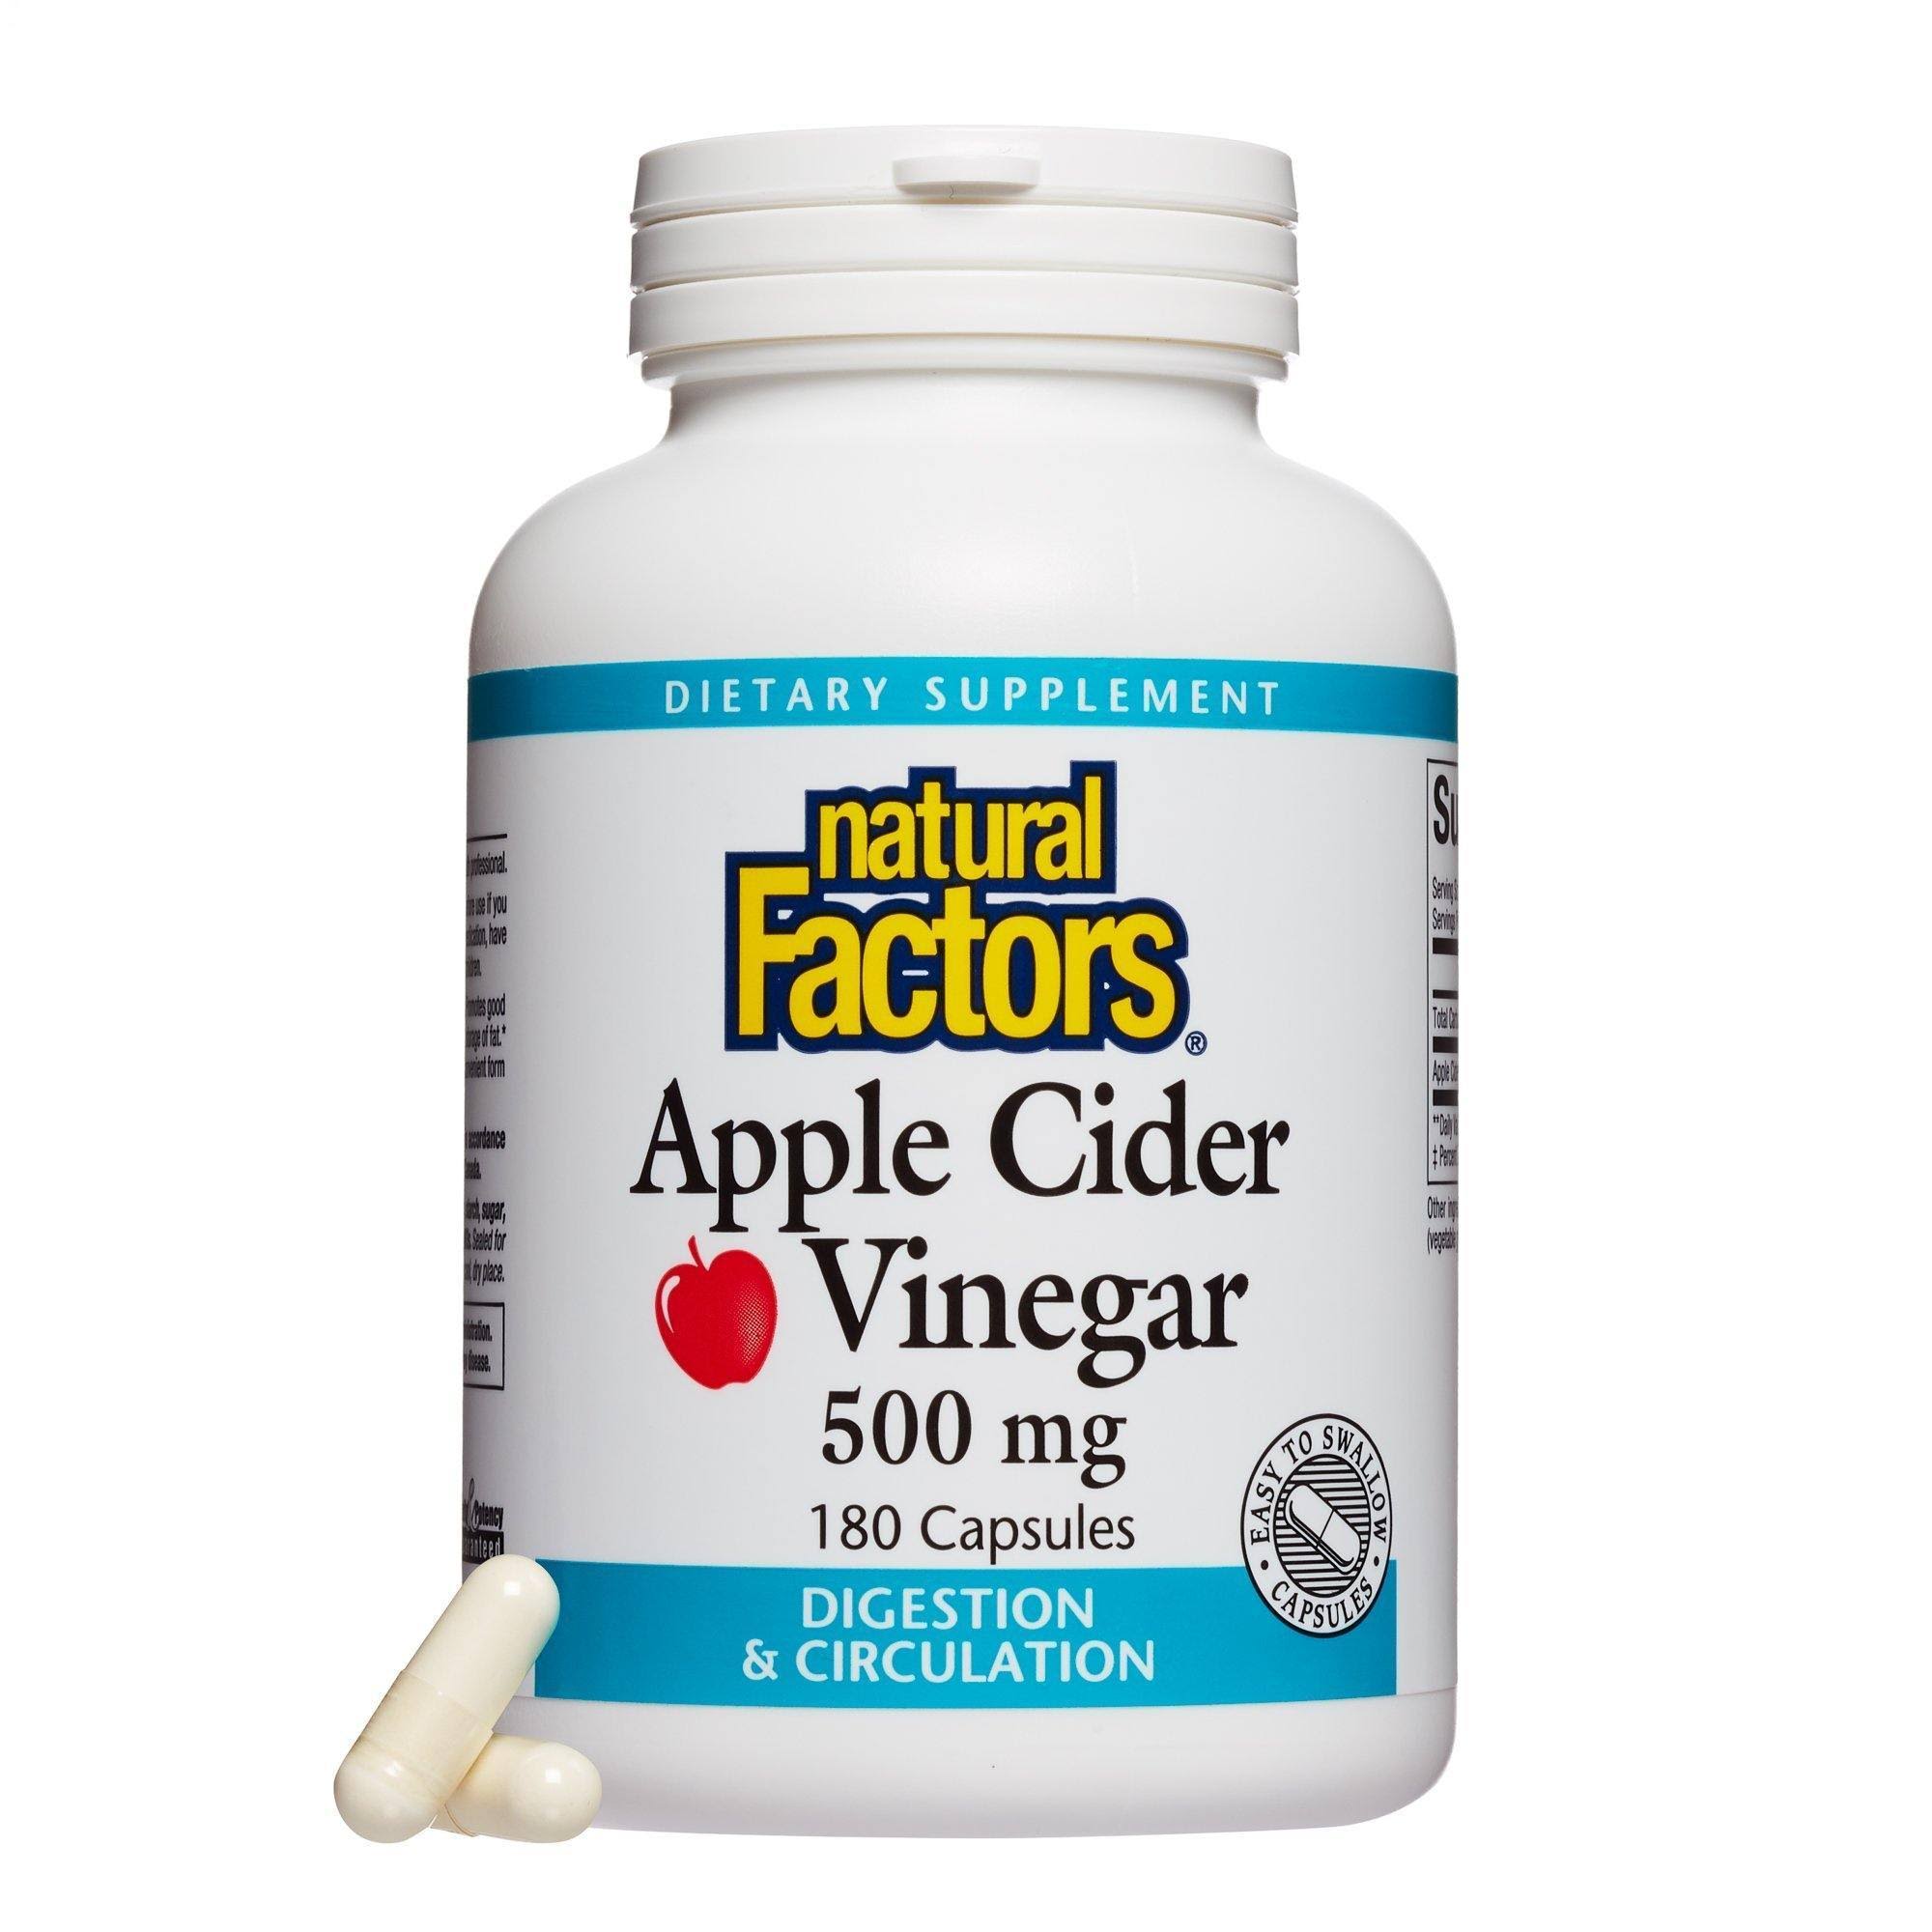 Natural Factors Apple Cider Vinegar - 500mg, 180 Capsules